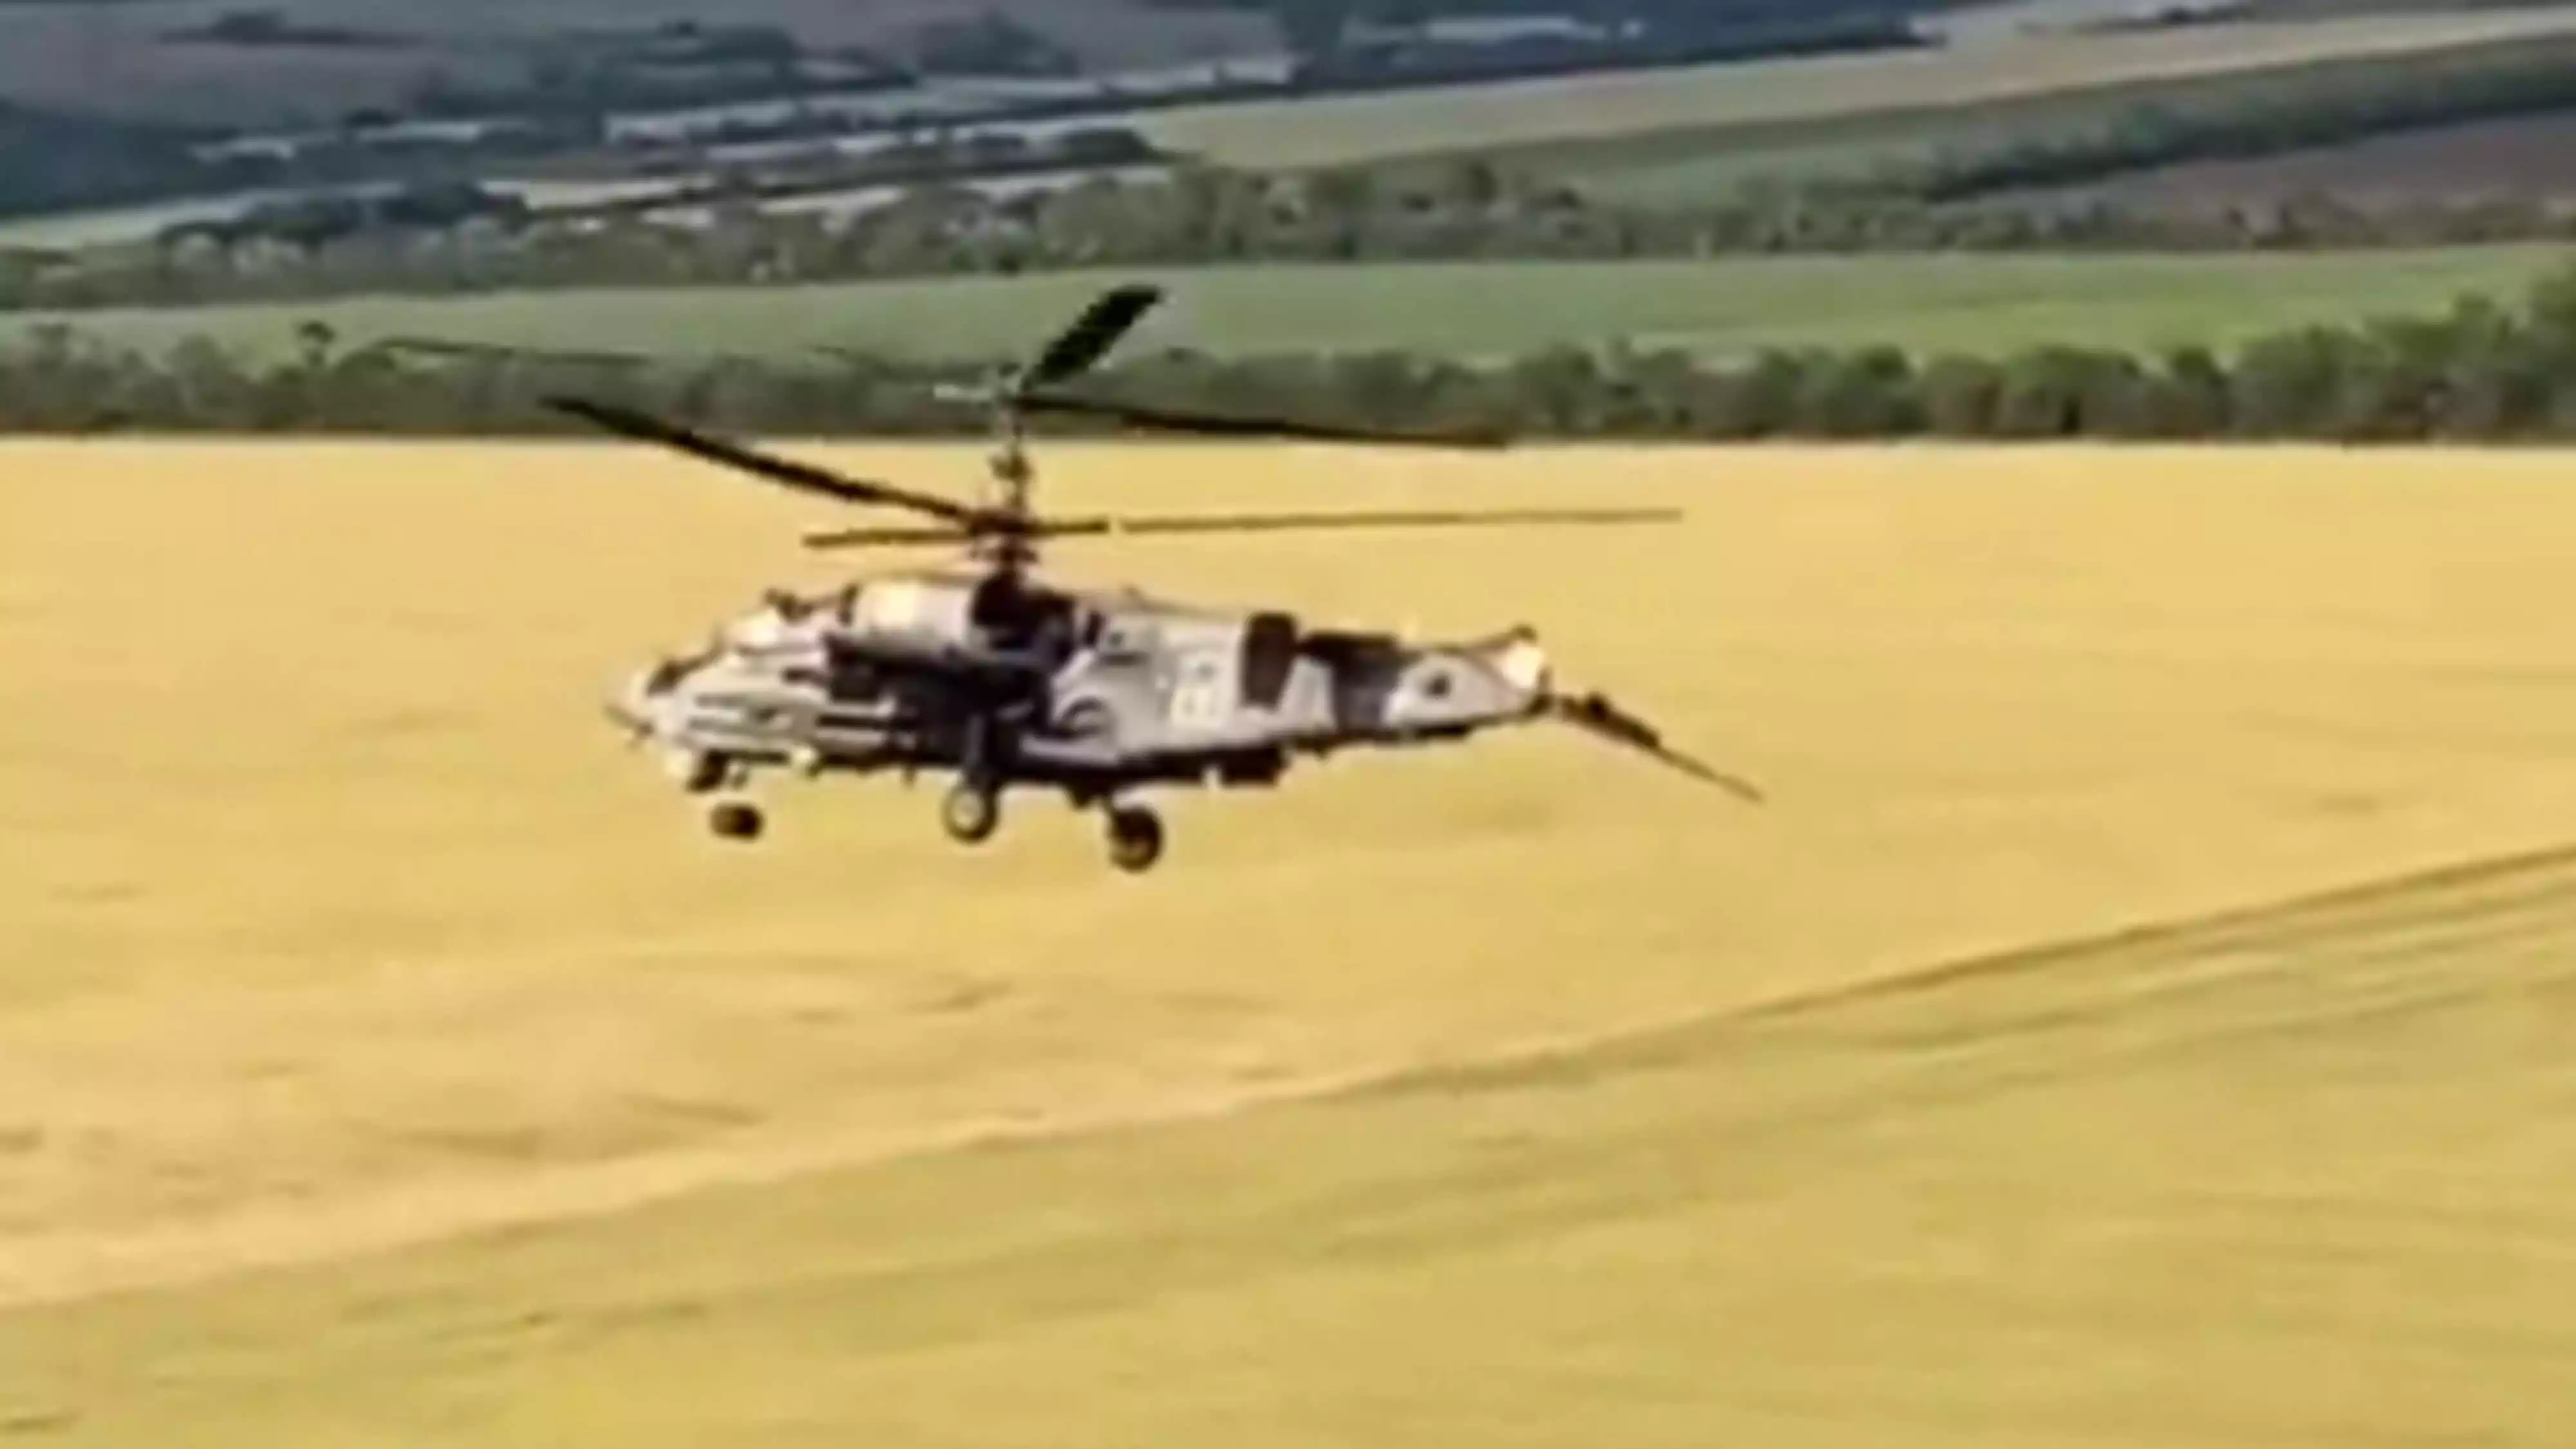 Un hélicoptère russe largue ses réservoirs et perd son empennage